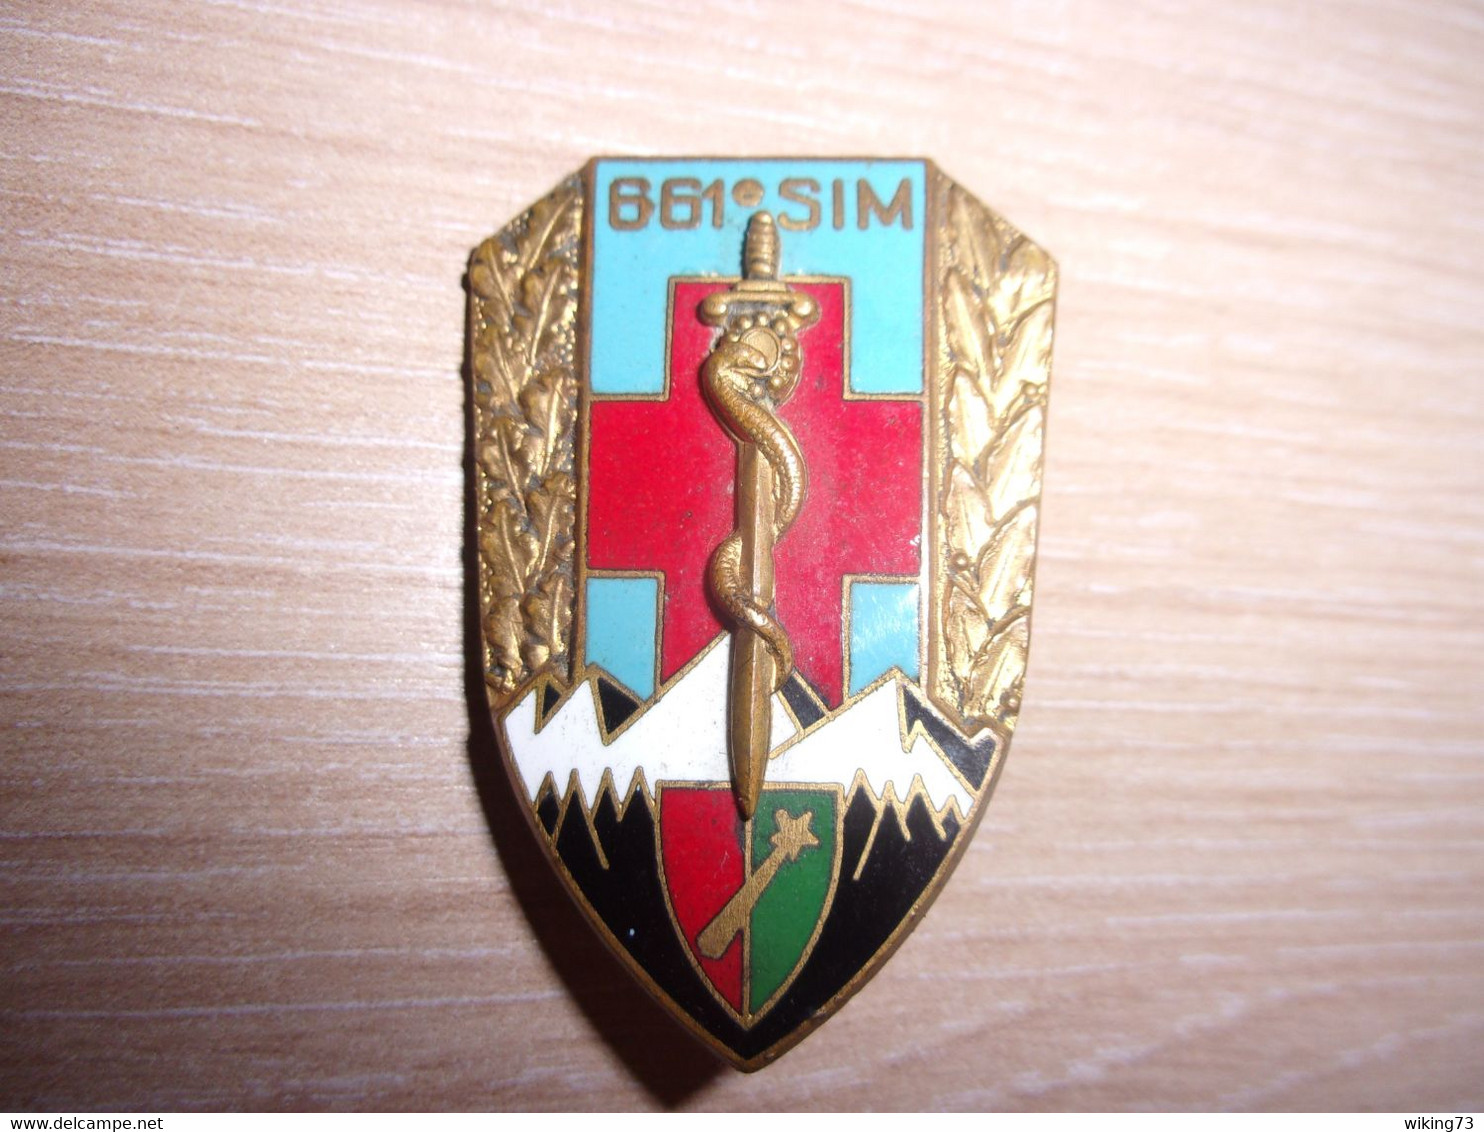 Insigne 661° Section D’infirmiers Militaires - Service De Santé - 1e Armée - SSA - Medical Services